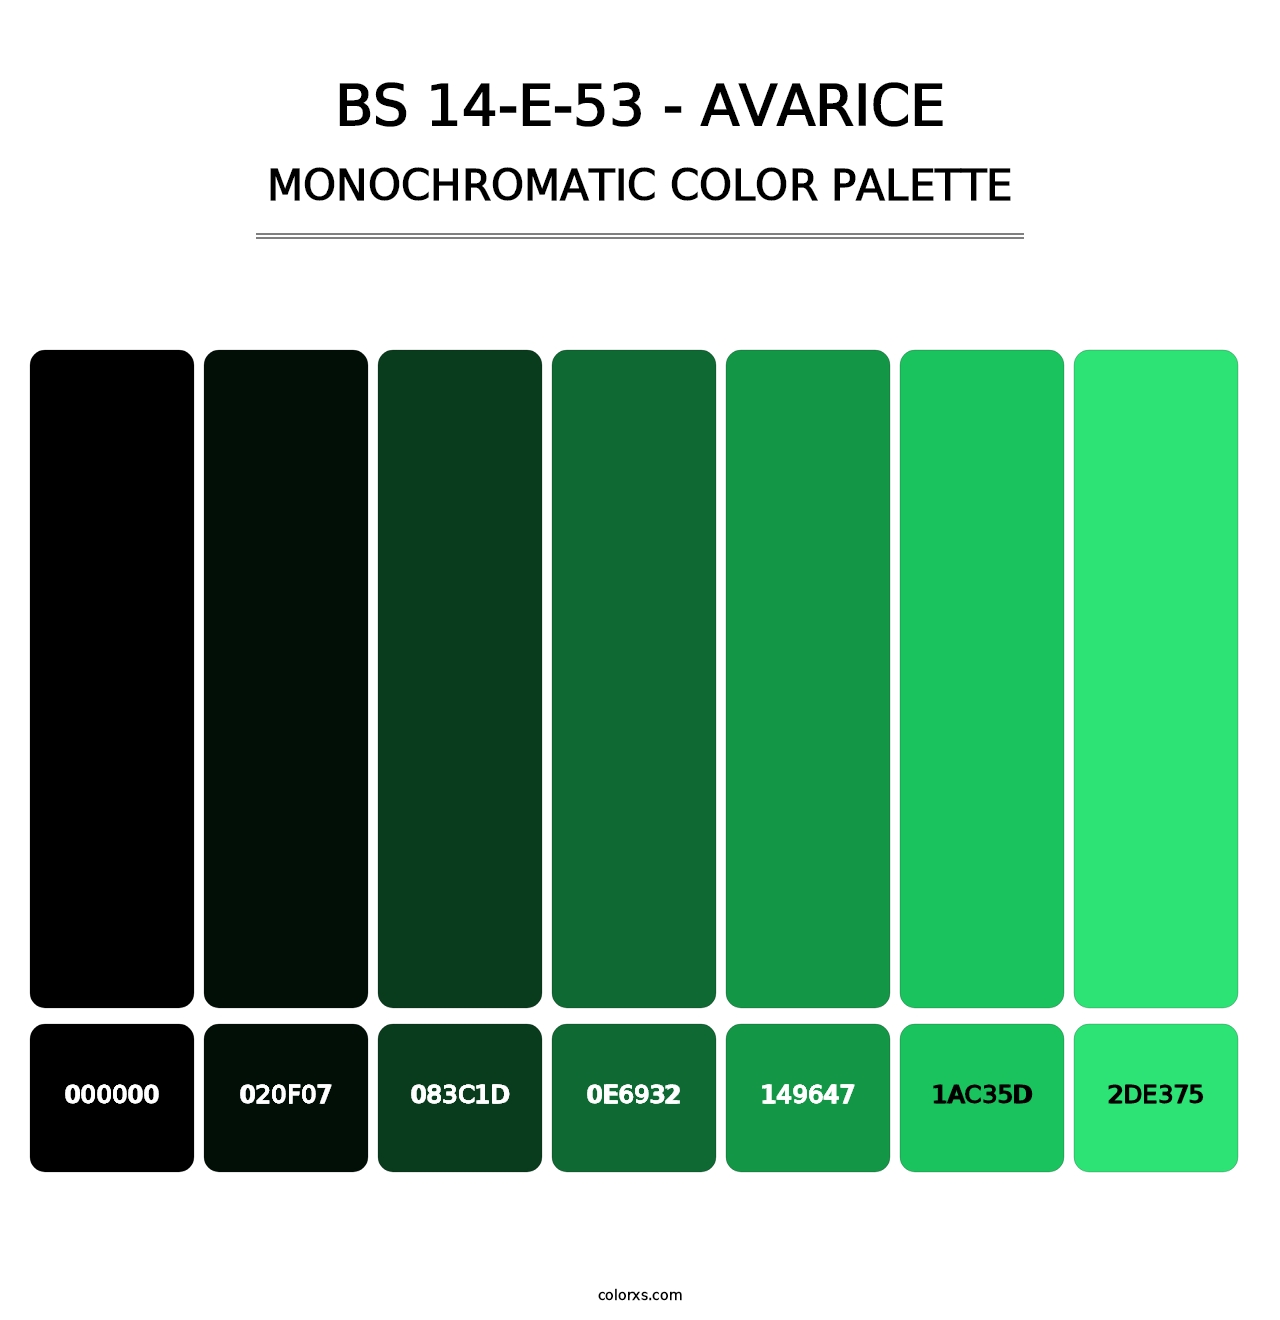 BS 14-E-53 - Avarice - Monochromatic Color Palette